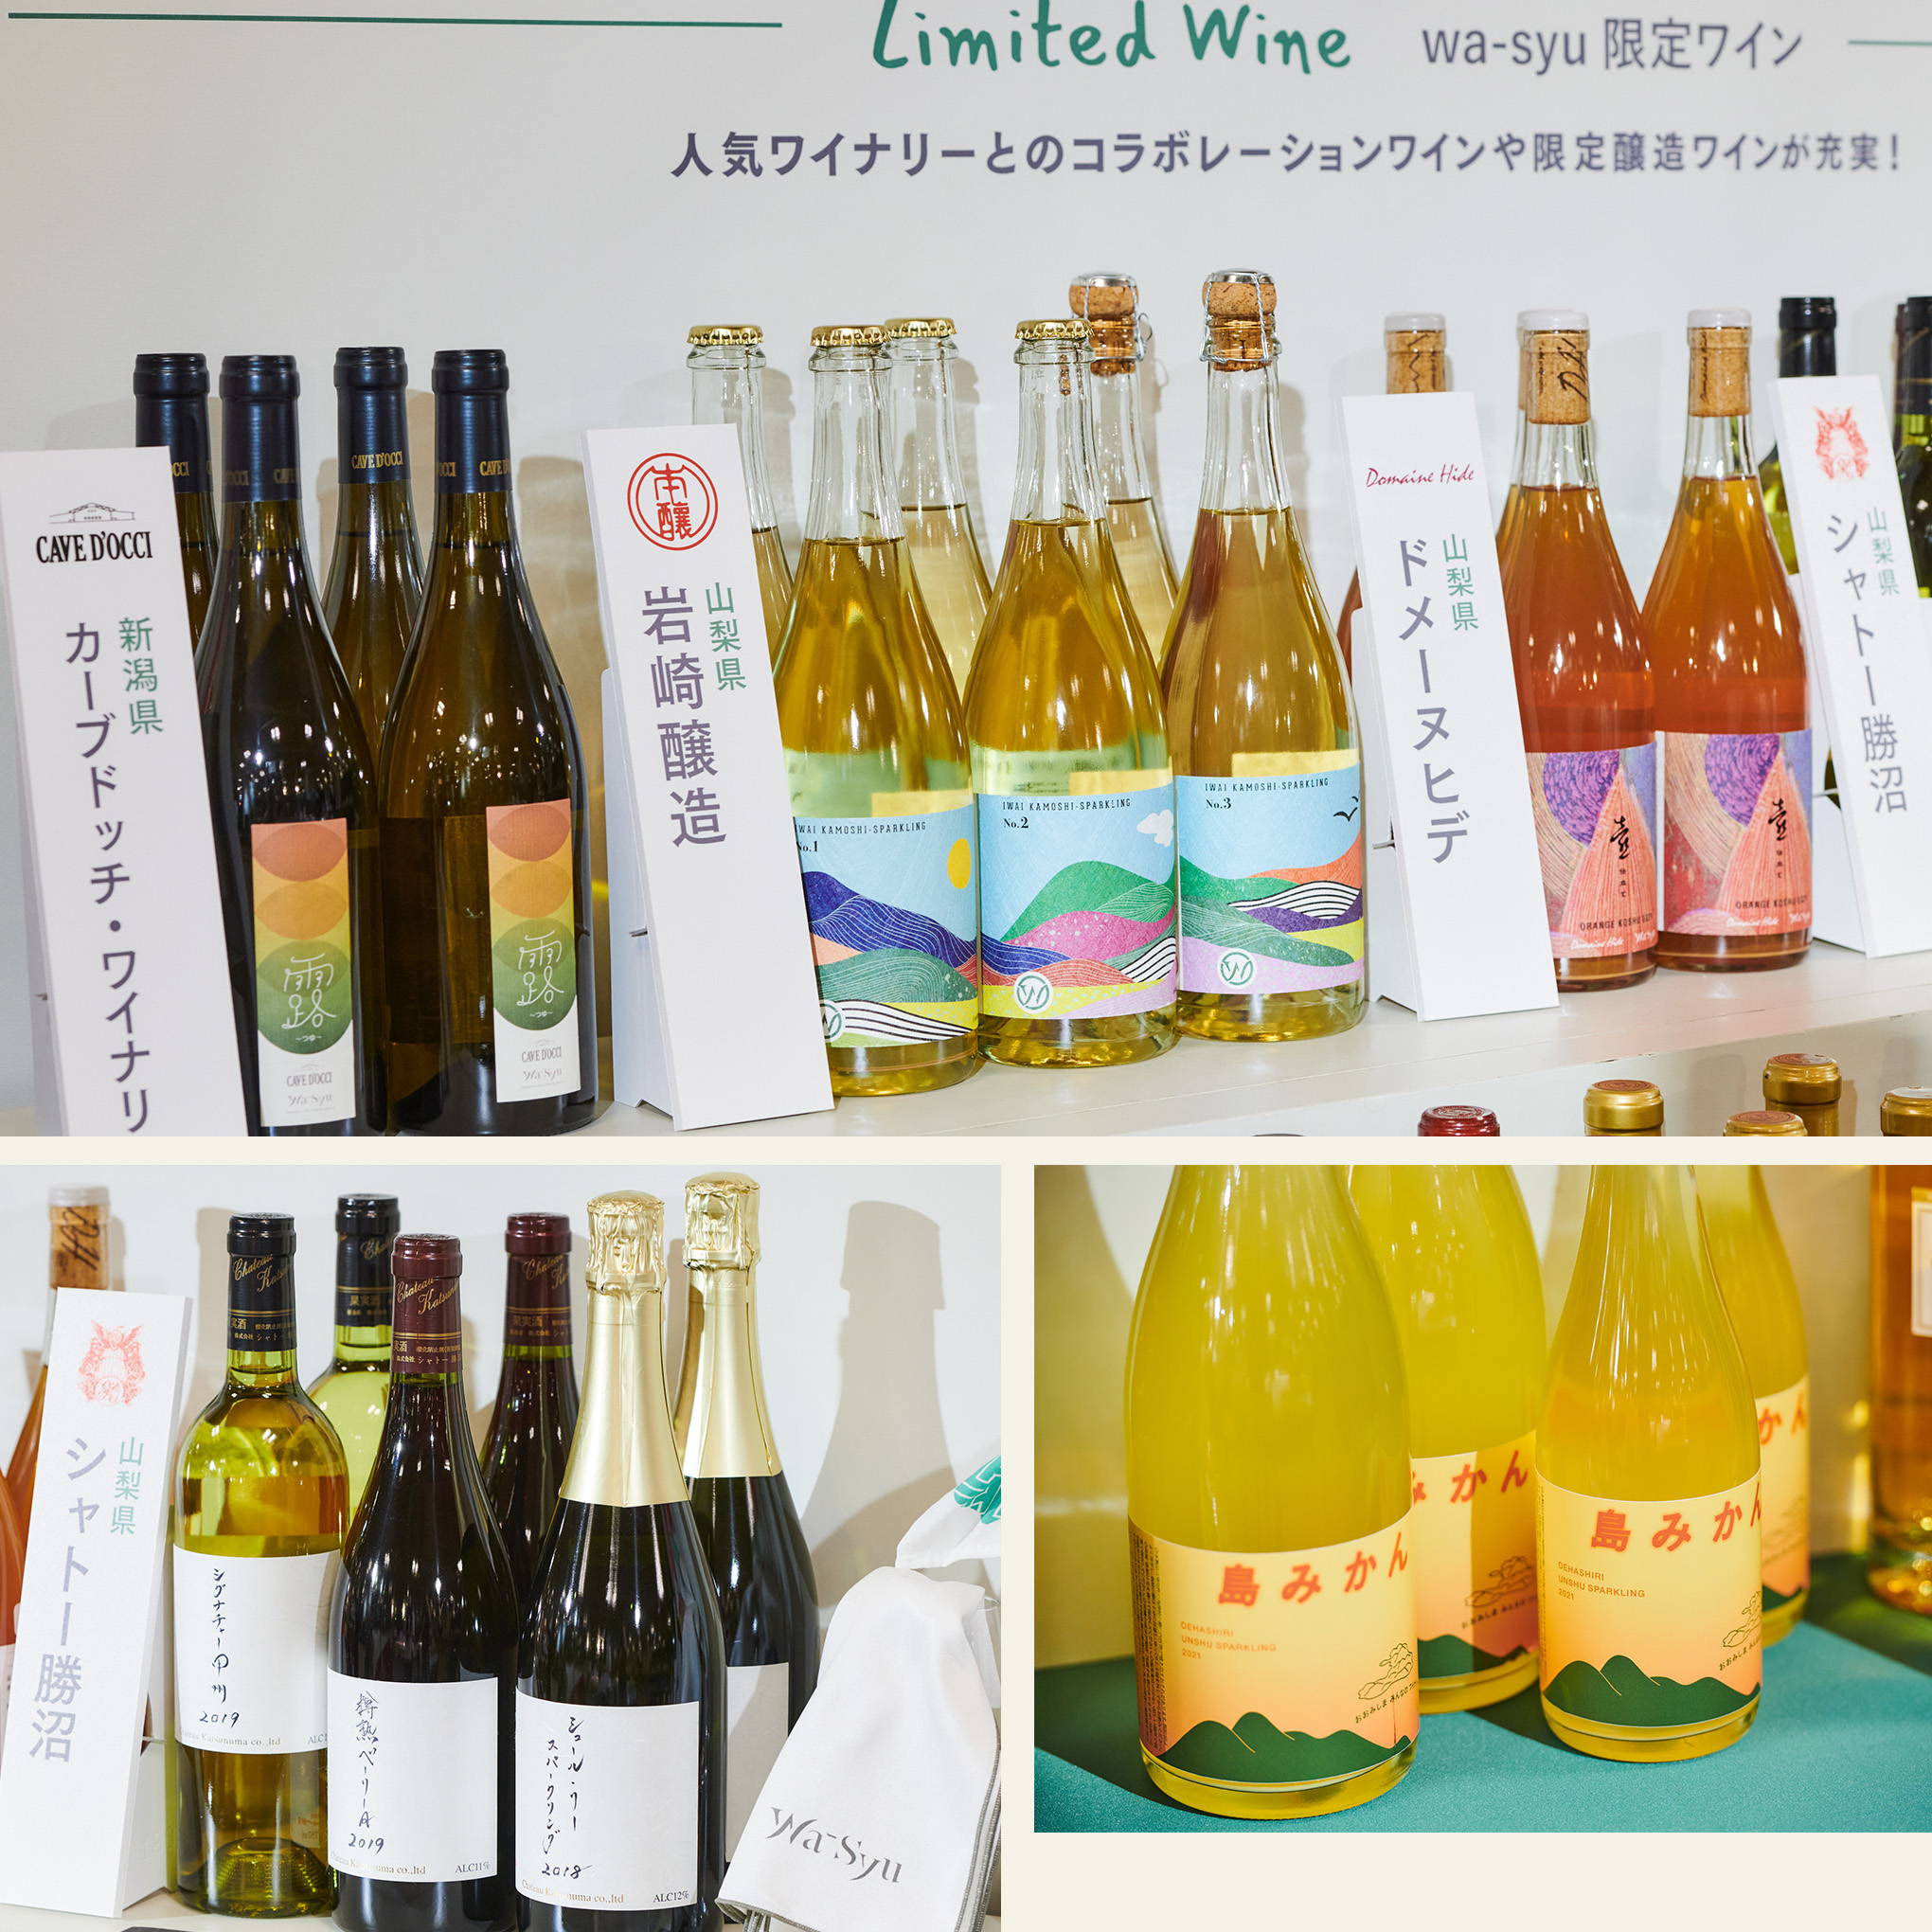 ソムリエやワインエキスパートが、『wa-syu』でしか手に入らない限定醸造やコラボレーションワインも紹介。珍しい希少銘柄やミカンのお酒なども！